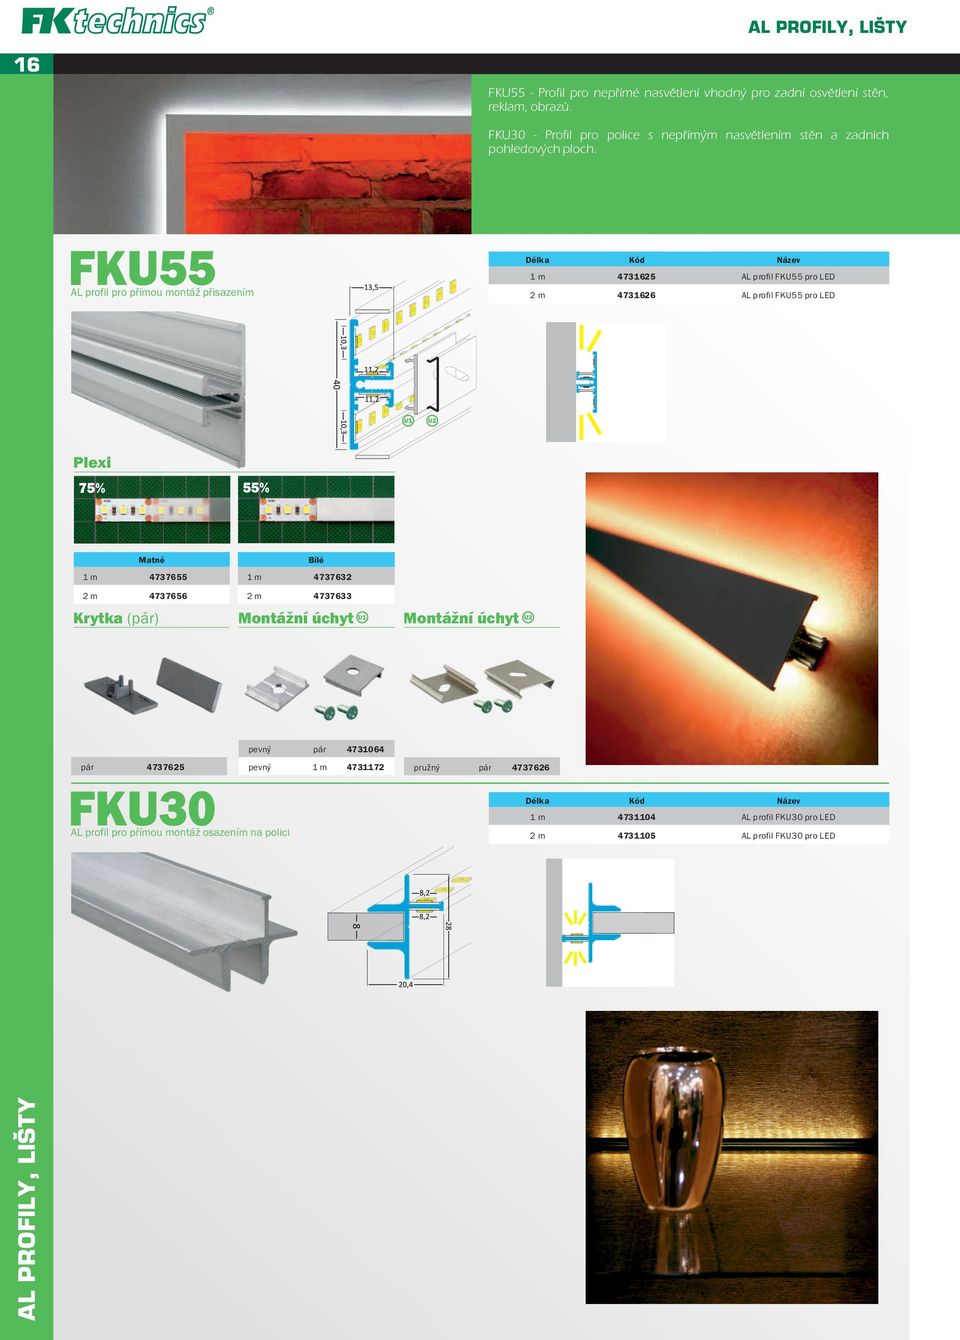 FKU55 AL profil pro přímou montáž přisazením 1 m 4731625 AL profil FKU55 pro LED 2 m 4731626 AL profil FKU55 pro LED Plexi 75% 55% Matné 1 m 4737655 1 m